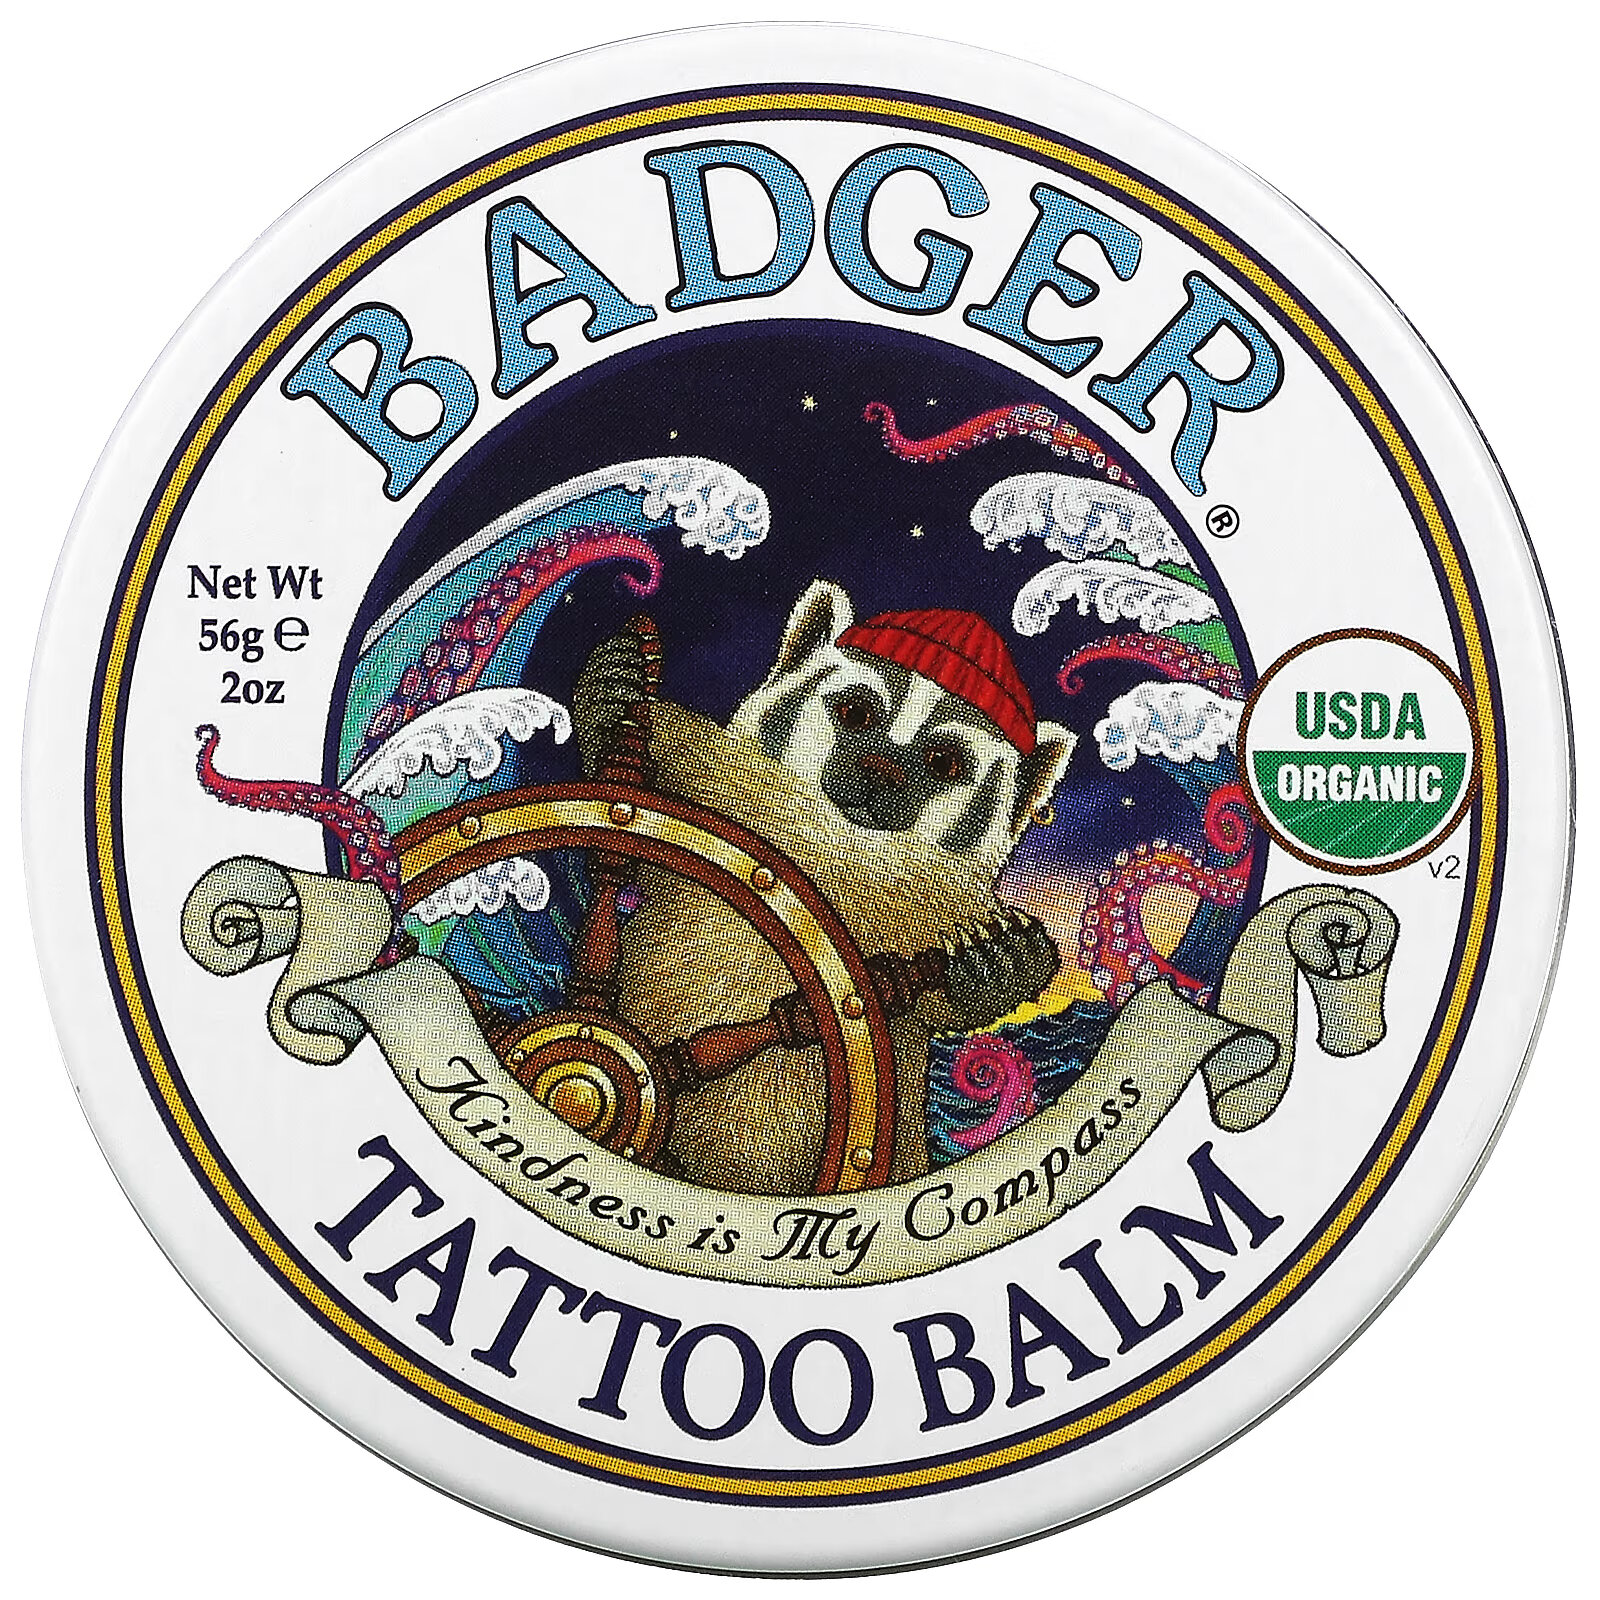 Badger Company, Органический бальзам для татуировок, 56 г (2 унции) badger company органические классические карандаши бальзам для губ зеленая коробка 4 карандаша бальзама 4 2 г 0 15 унции каждый